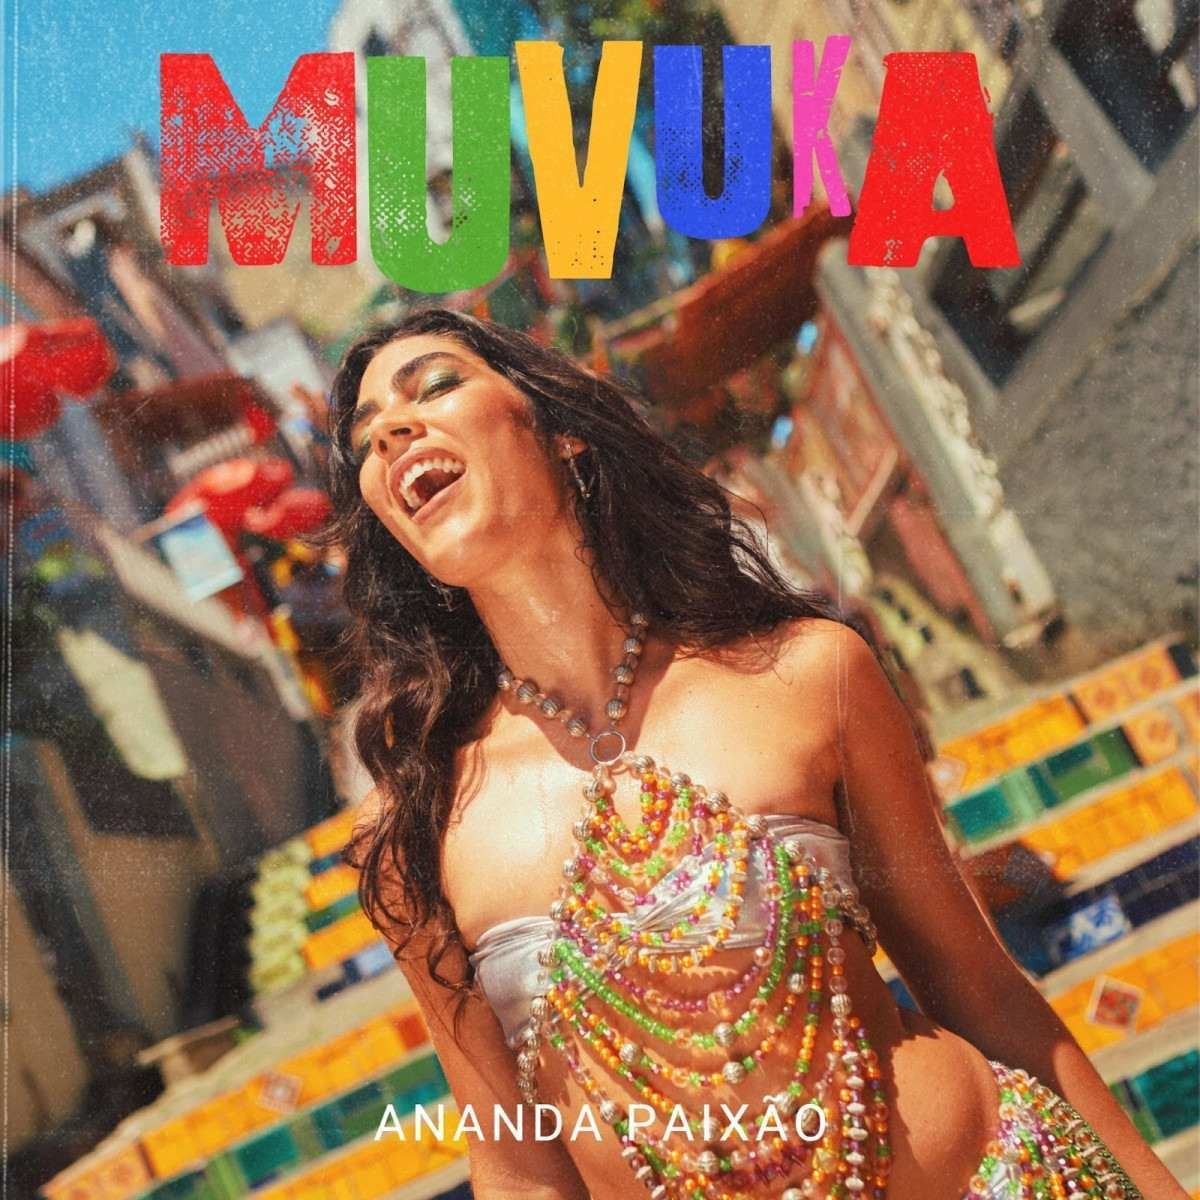 Ananda Paixão lança 'Muvuka', pagodão envolvente para curtir o carnaval